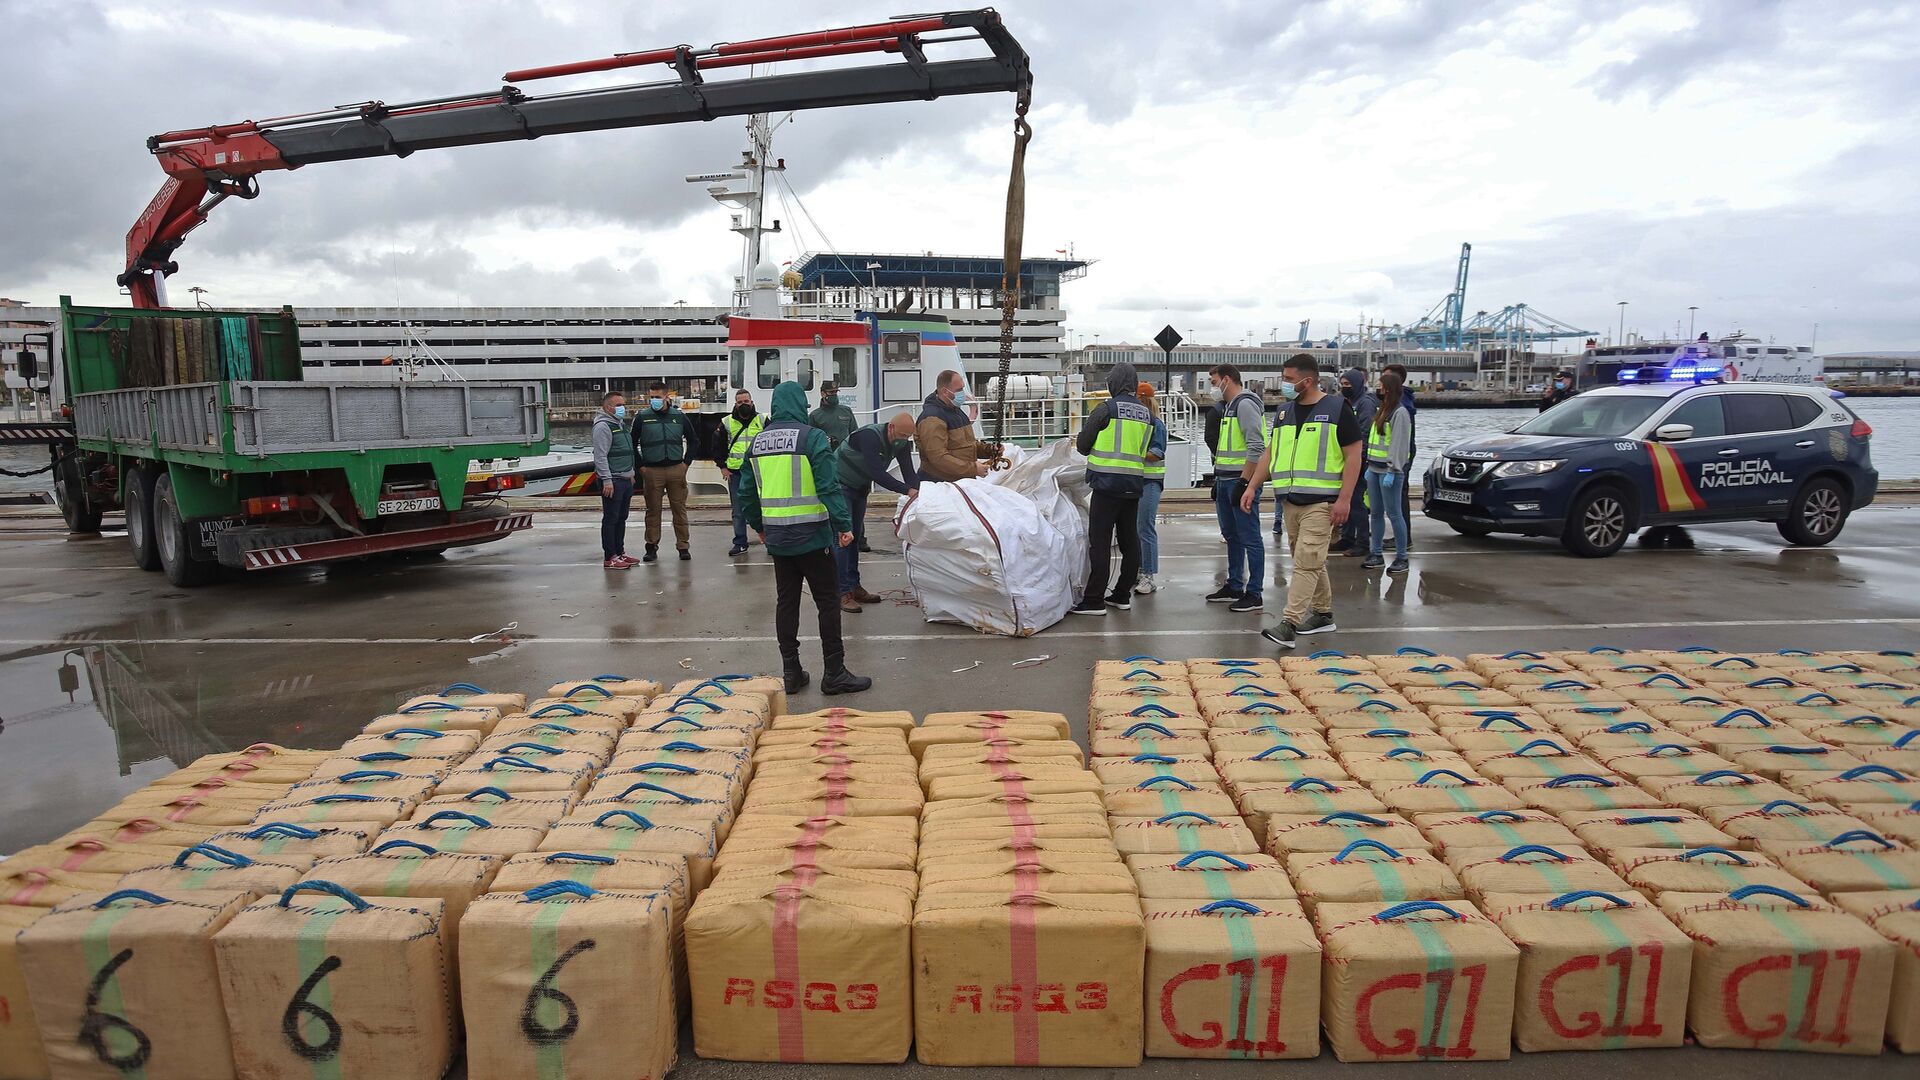 Aprensi&oacute;n de 7 toneladas de hach&iacute;s que viajaban en el remolcador 'Felsted'. Agentes de la Polic&iacute;a Nacional descargan la droga incautada de la embarcaci&oacute;n en el Puerto de Algeciras.